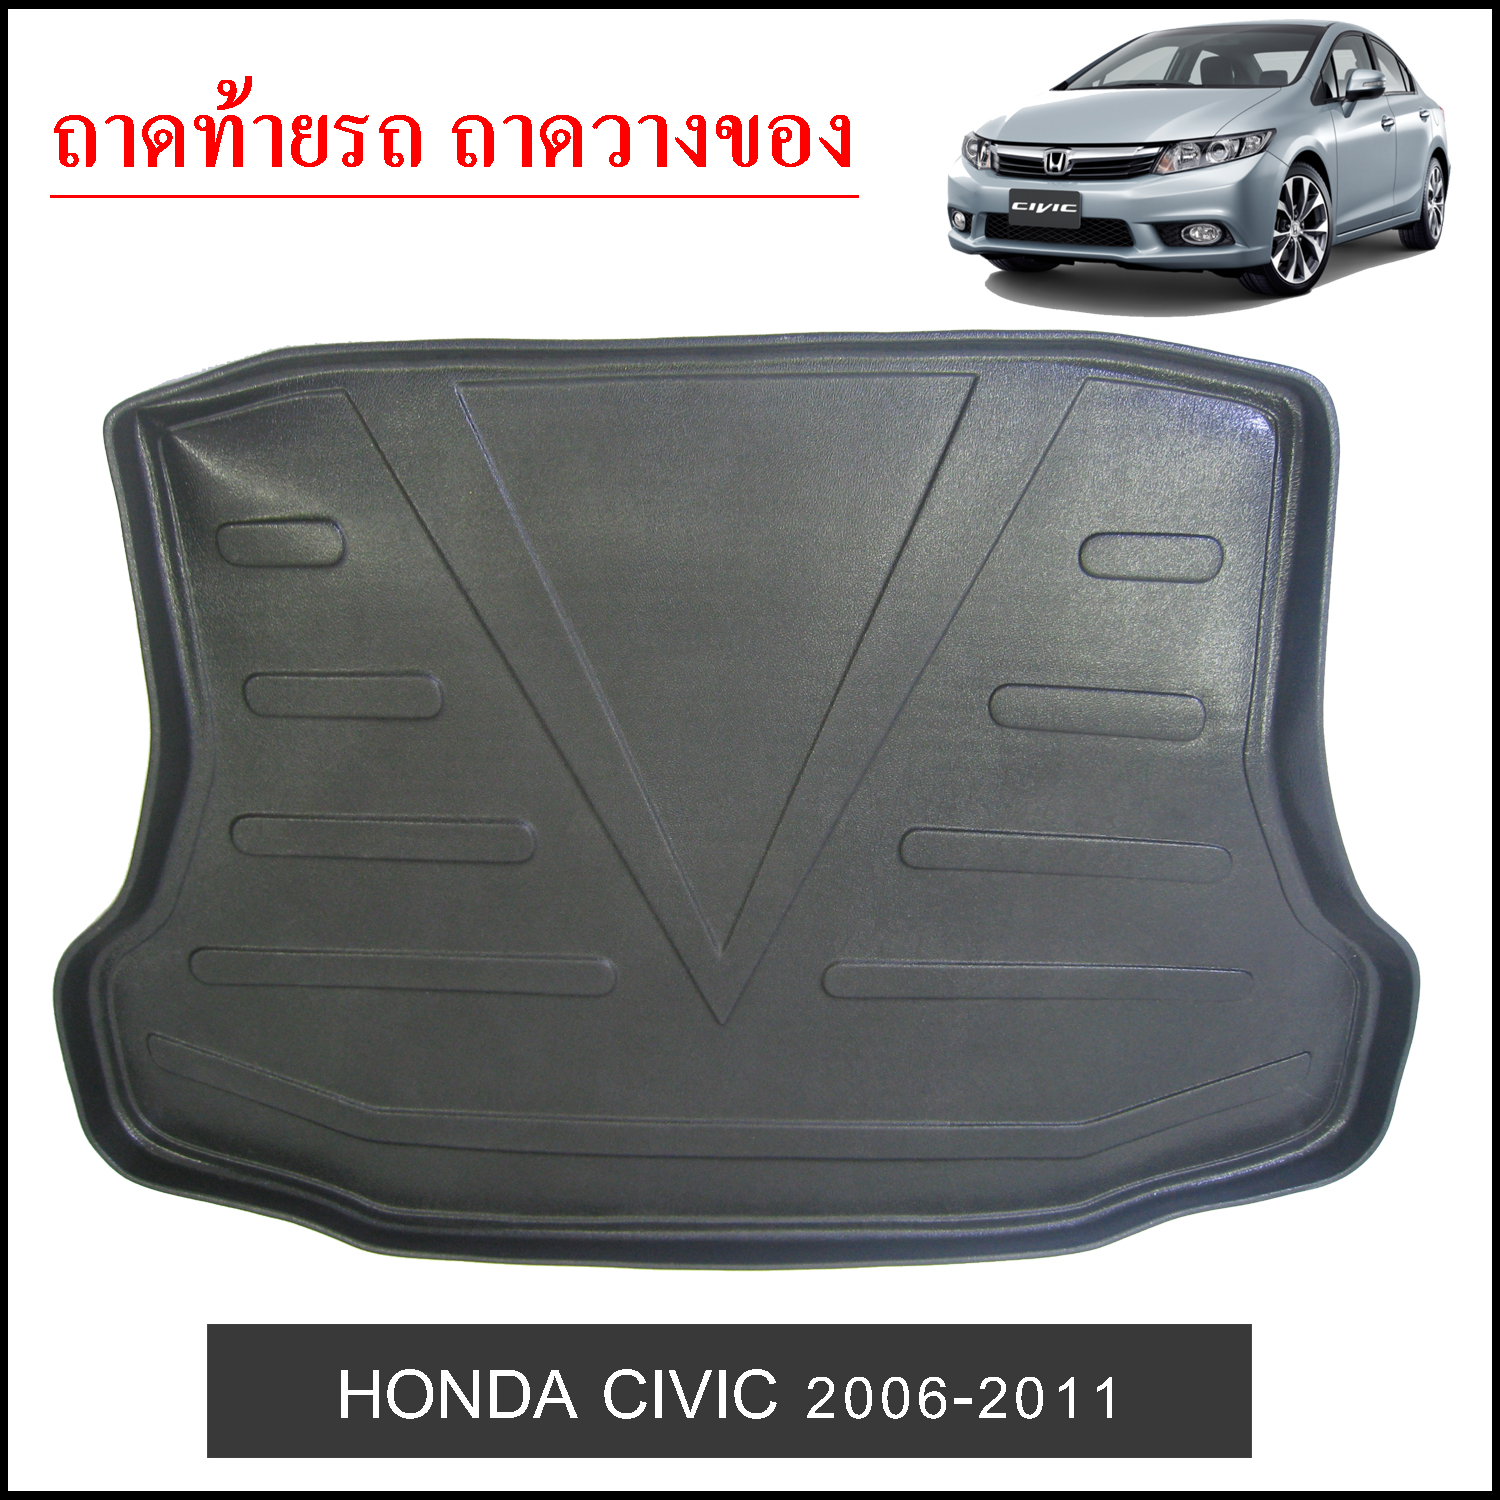 ถาดท้ายวางของ Honda Civic 2006-2011